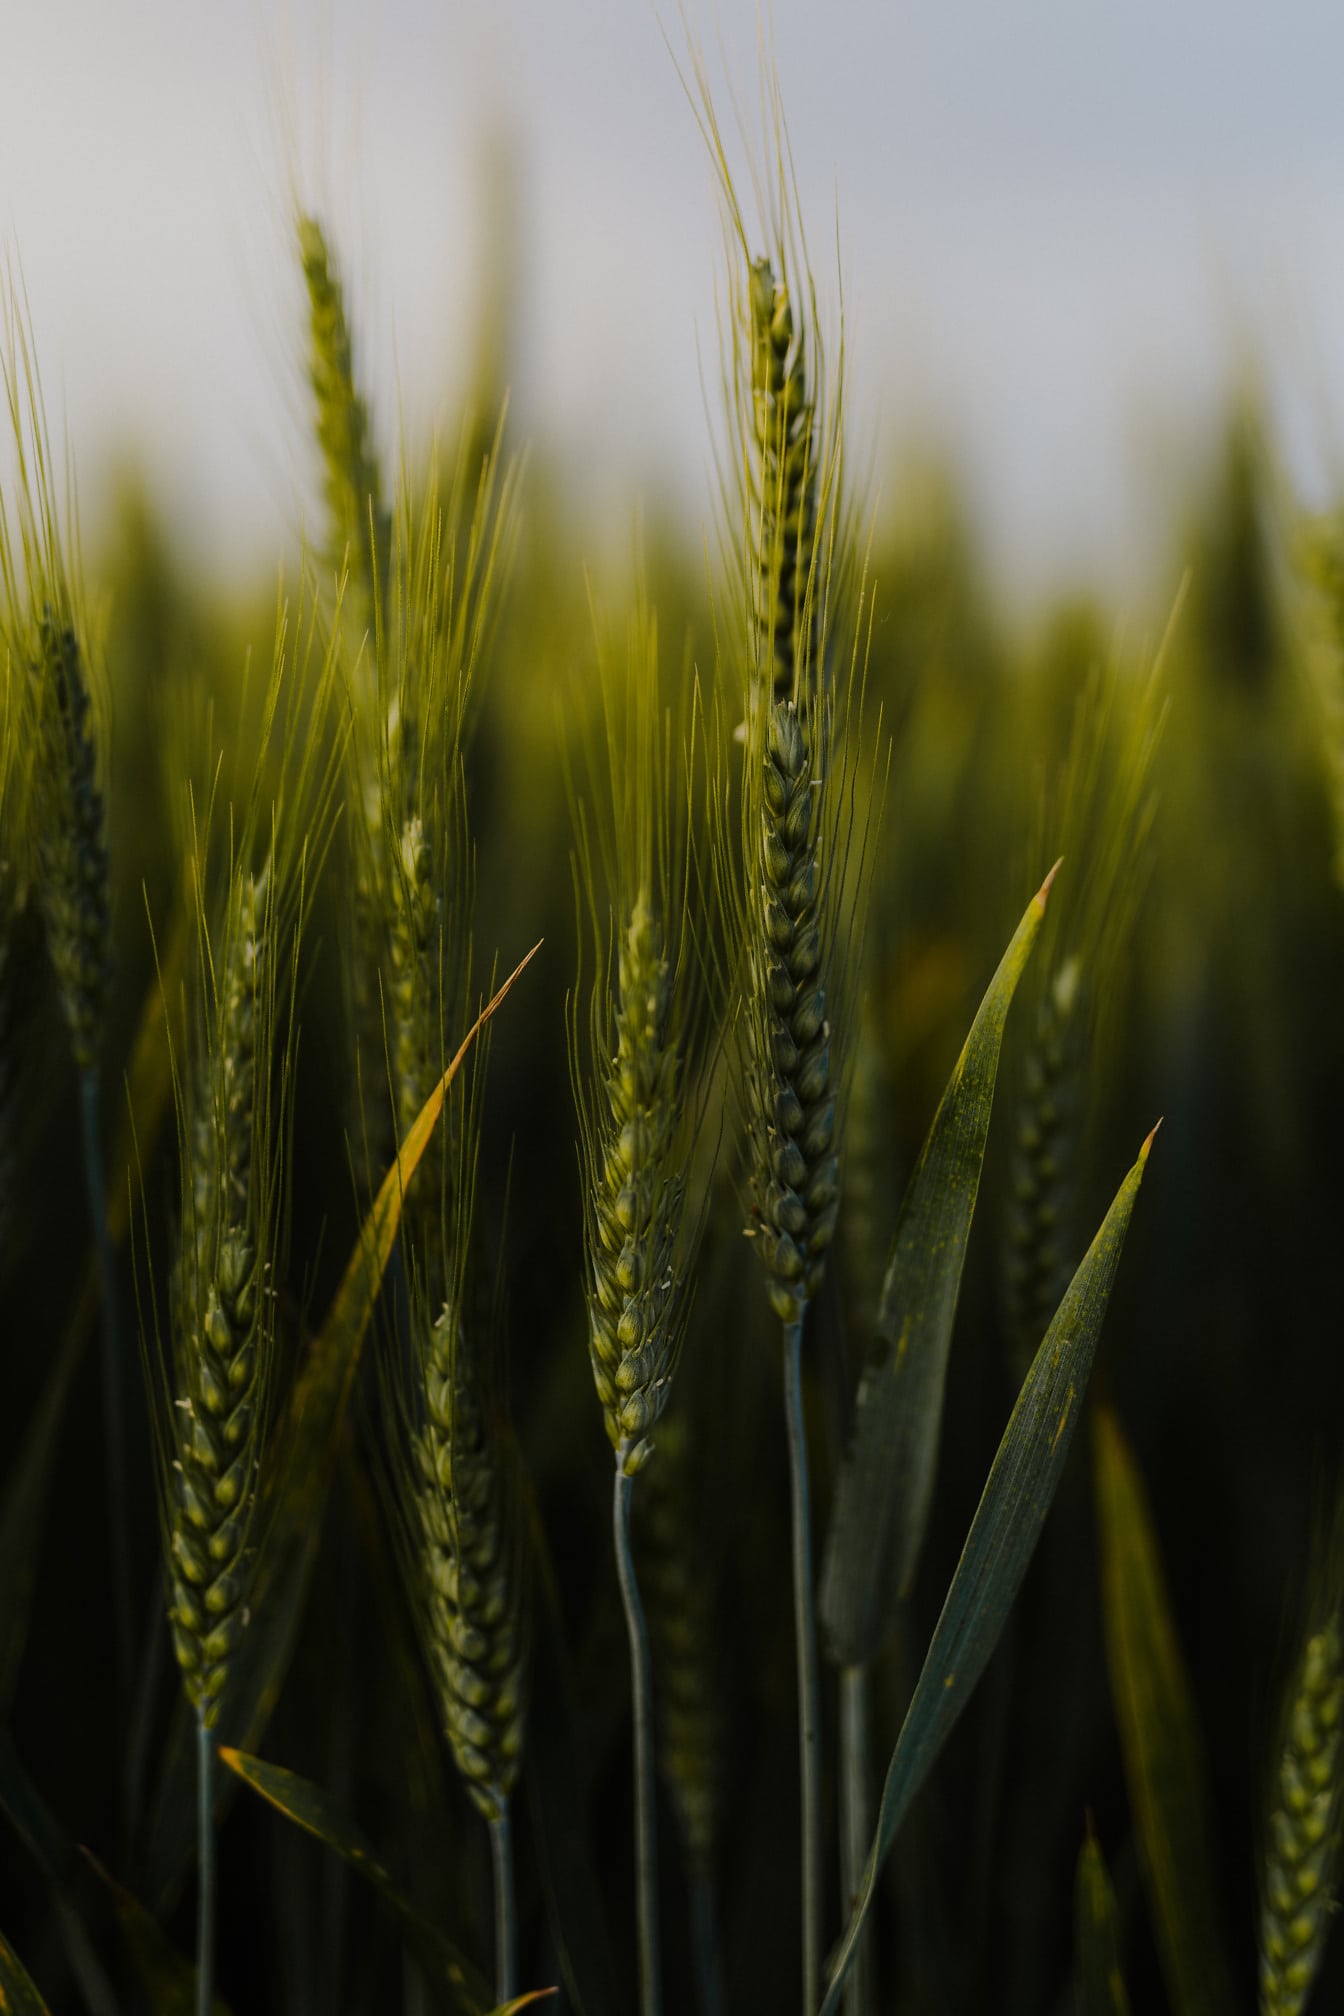 Cận cảnh thân cây xanh đậm của thảo mộc lúa mì hữu cơ